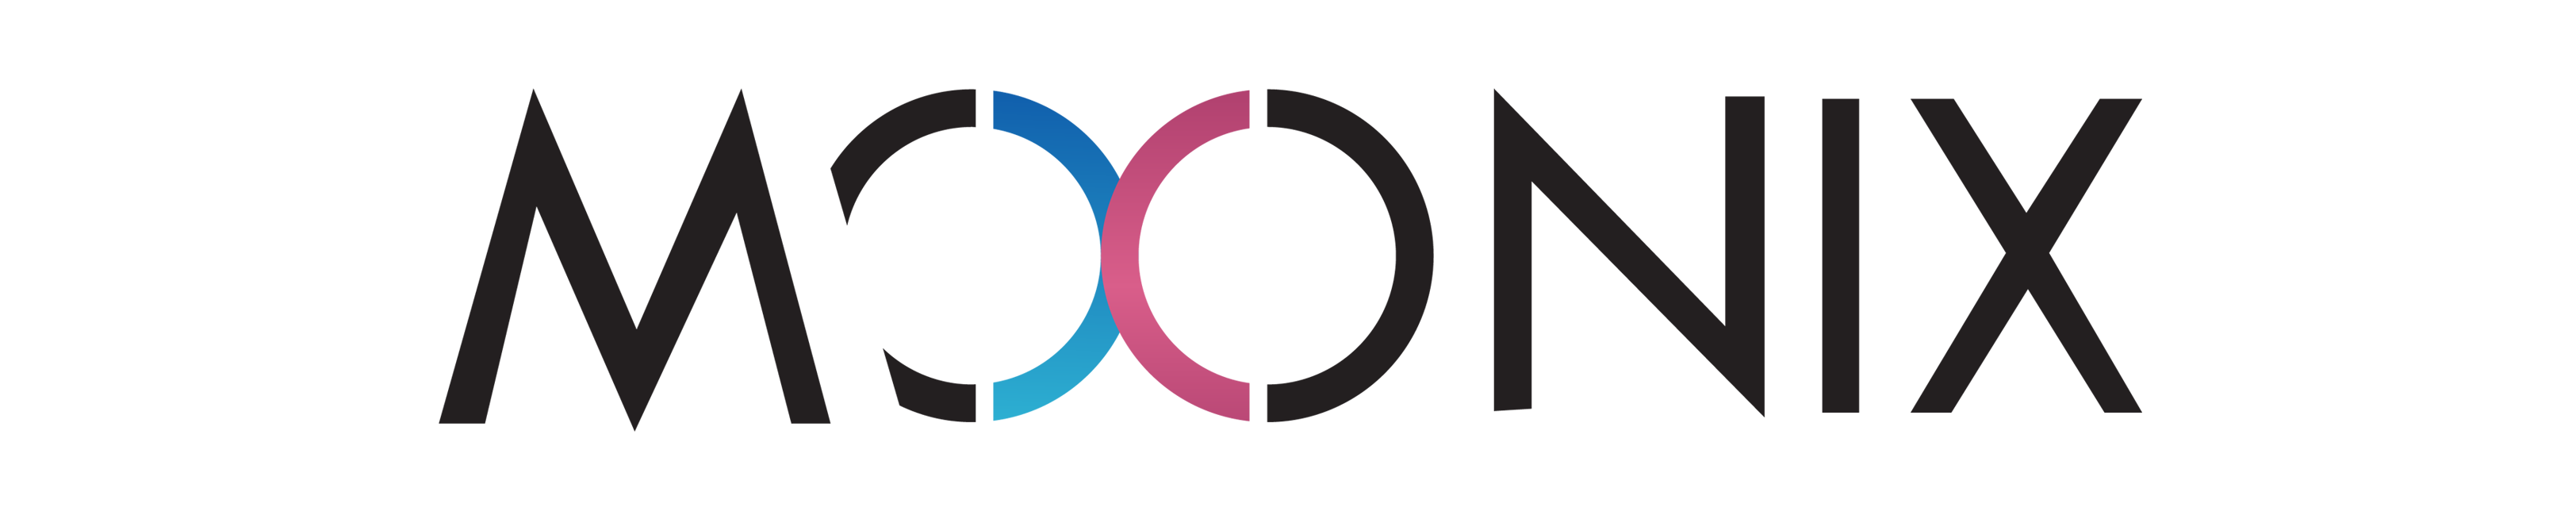 moonix-logo